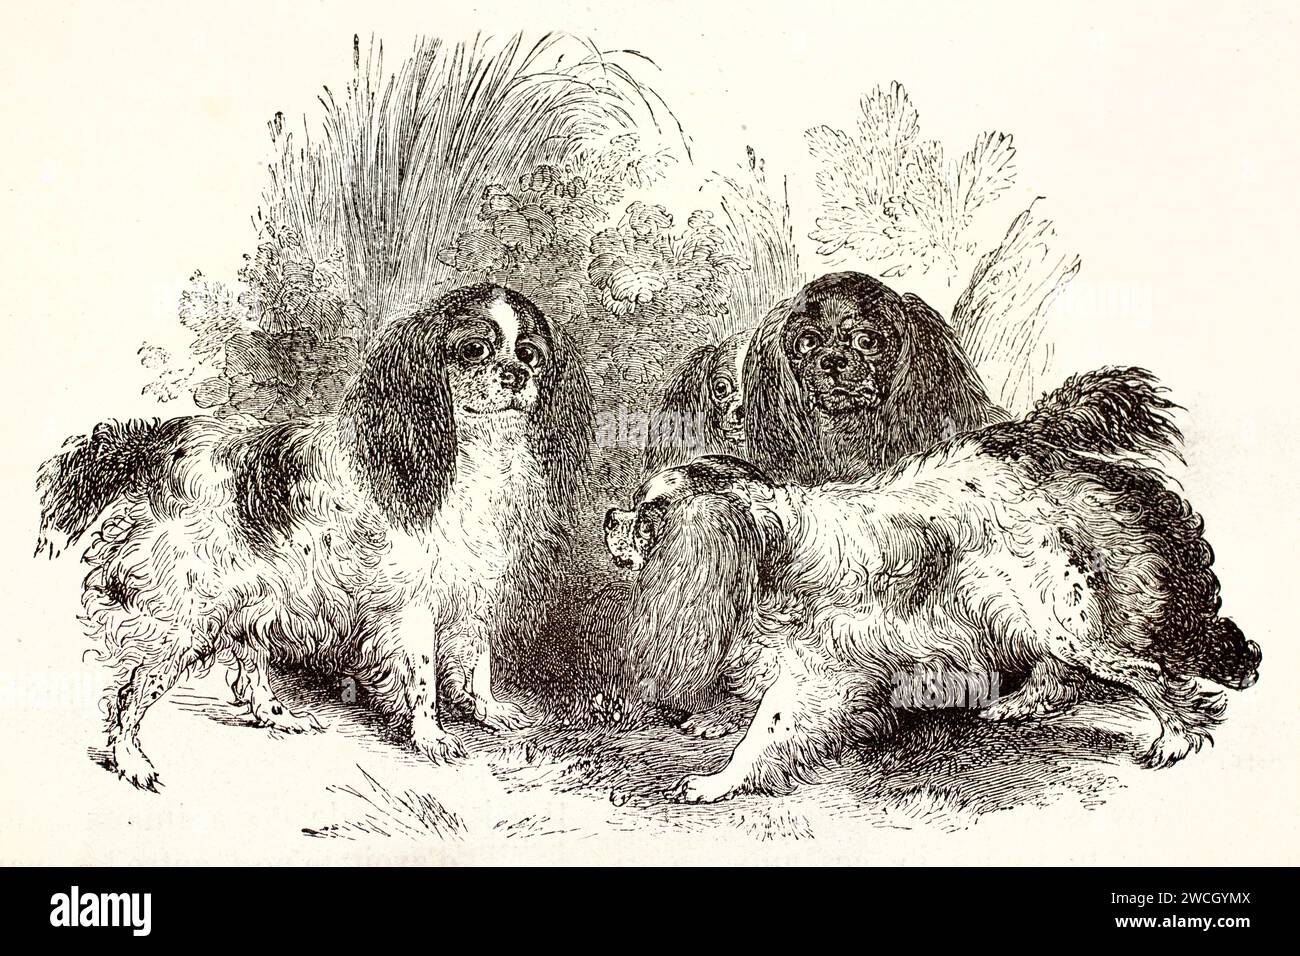 Alte gravierte Illustration des Kavalierkönigs Charles Spaniel. Von unbekanntem Autor, veröffentlicht auf Brehm, Les Mammifers, Baillière et fils, Paris, 1878 Stockfoto